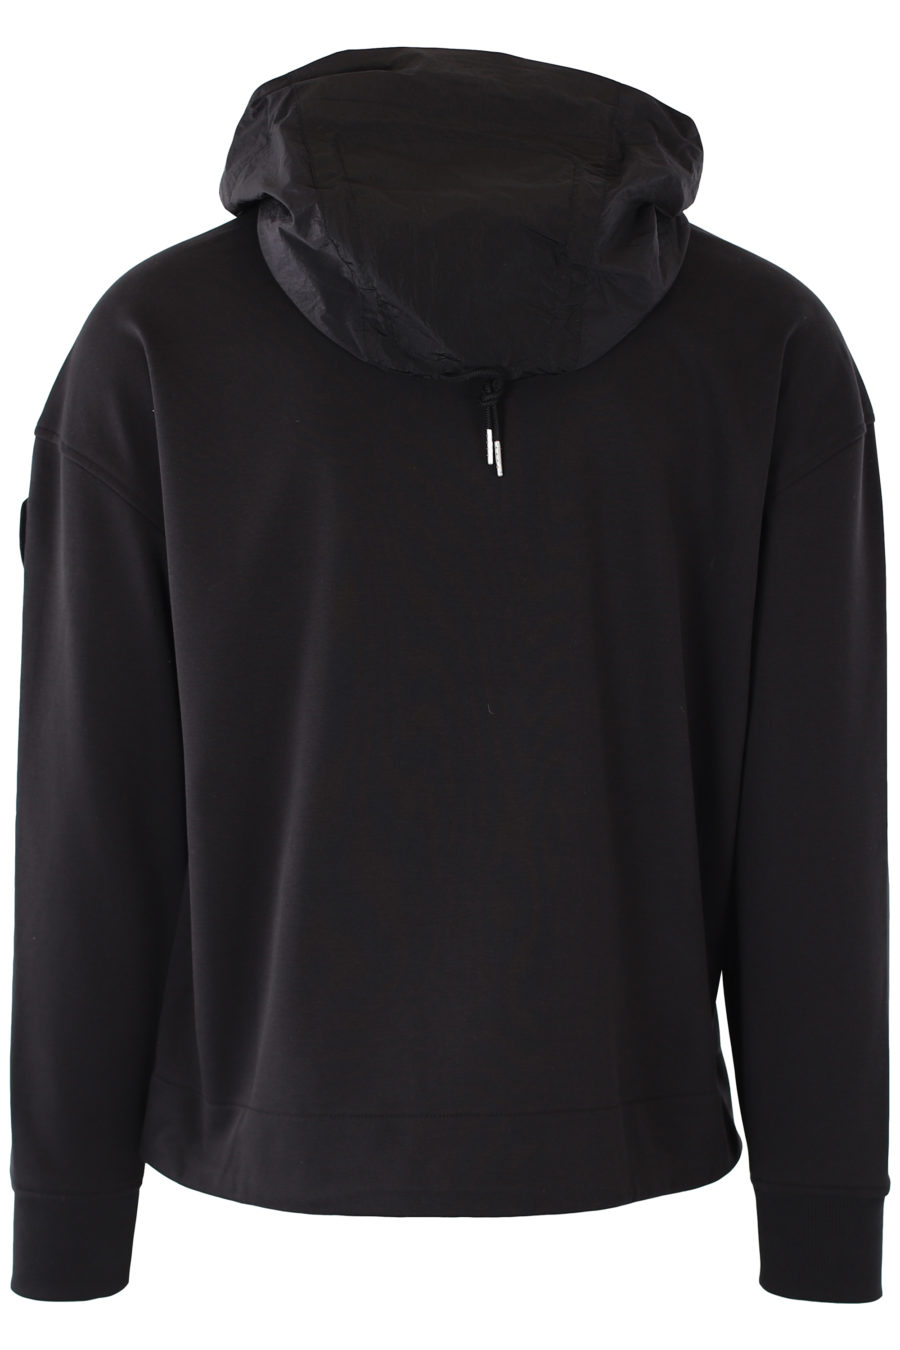 Veste de survêtement noire avec capuche et poches - IMG 1168